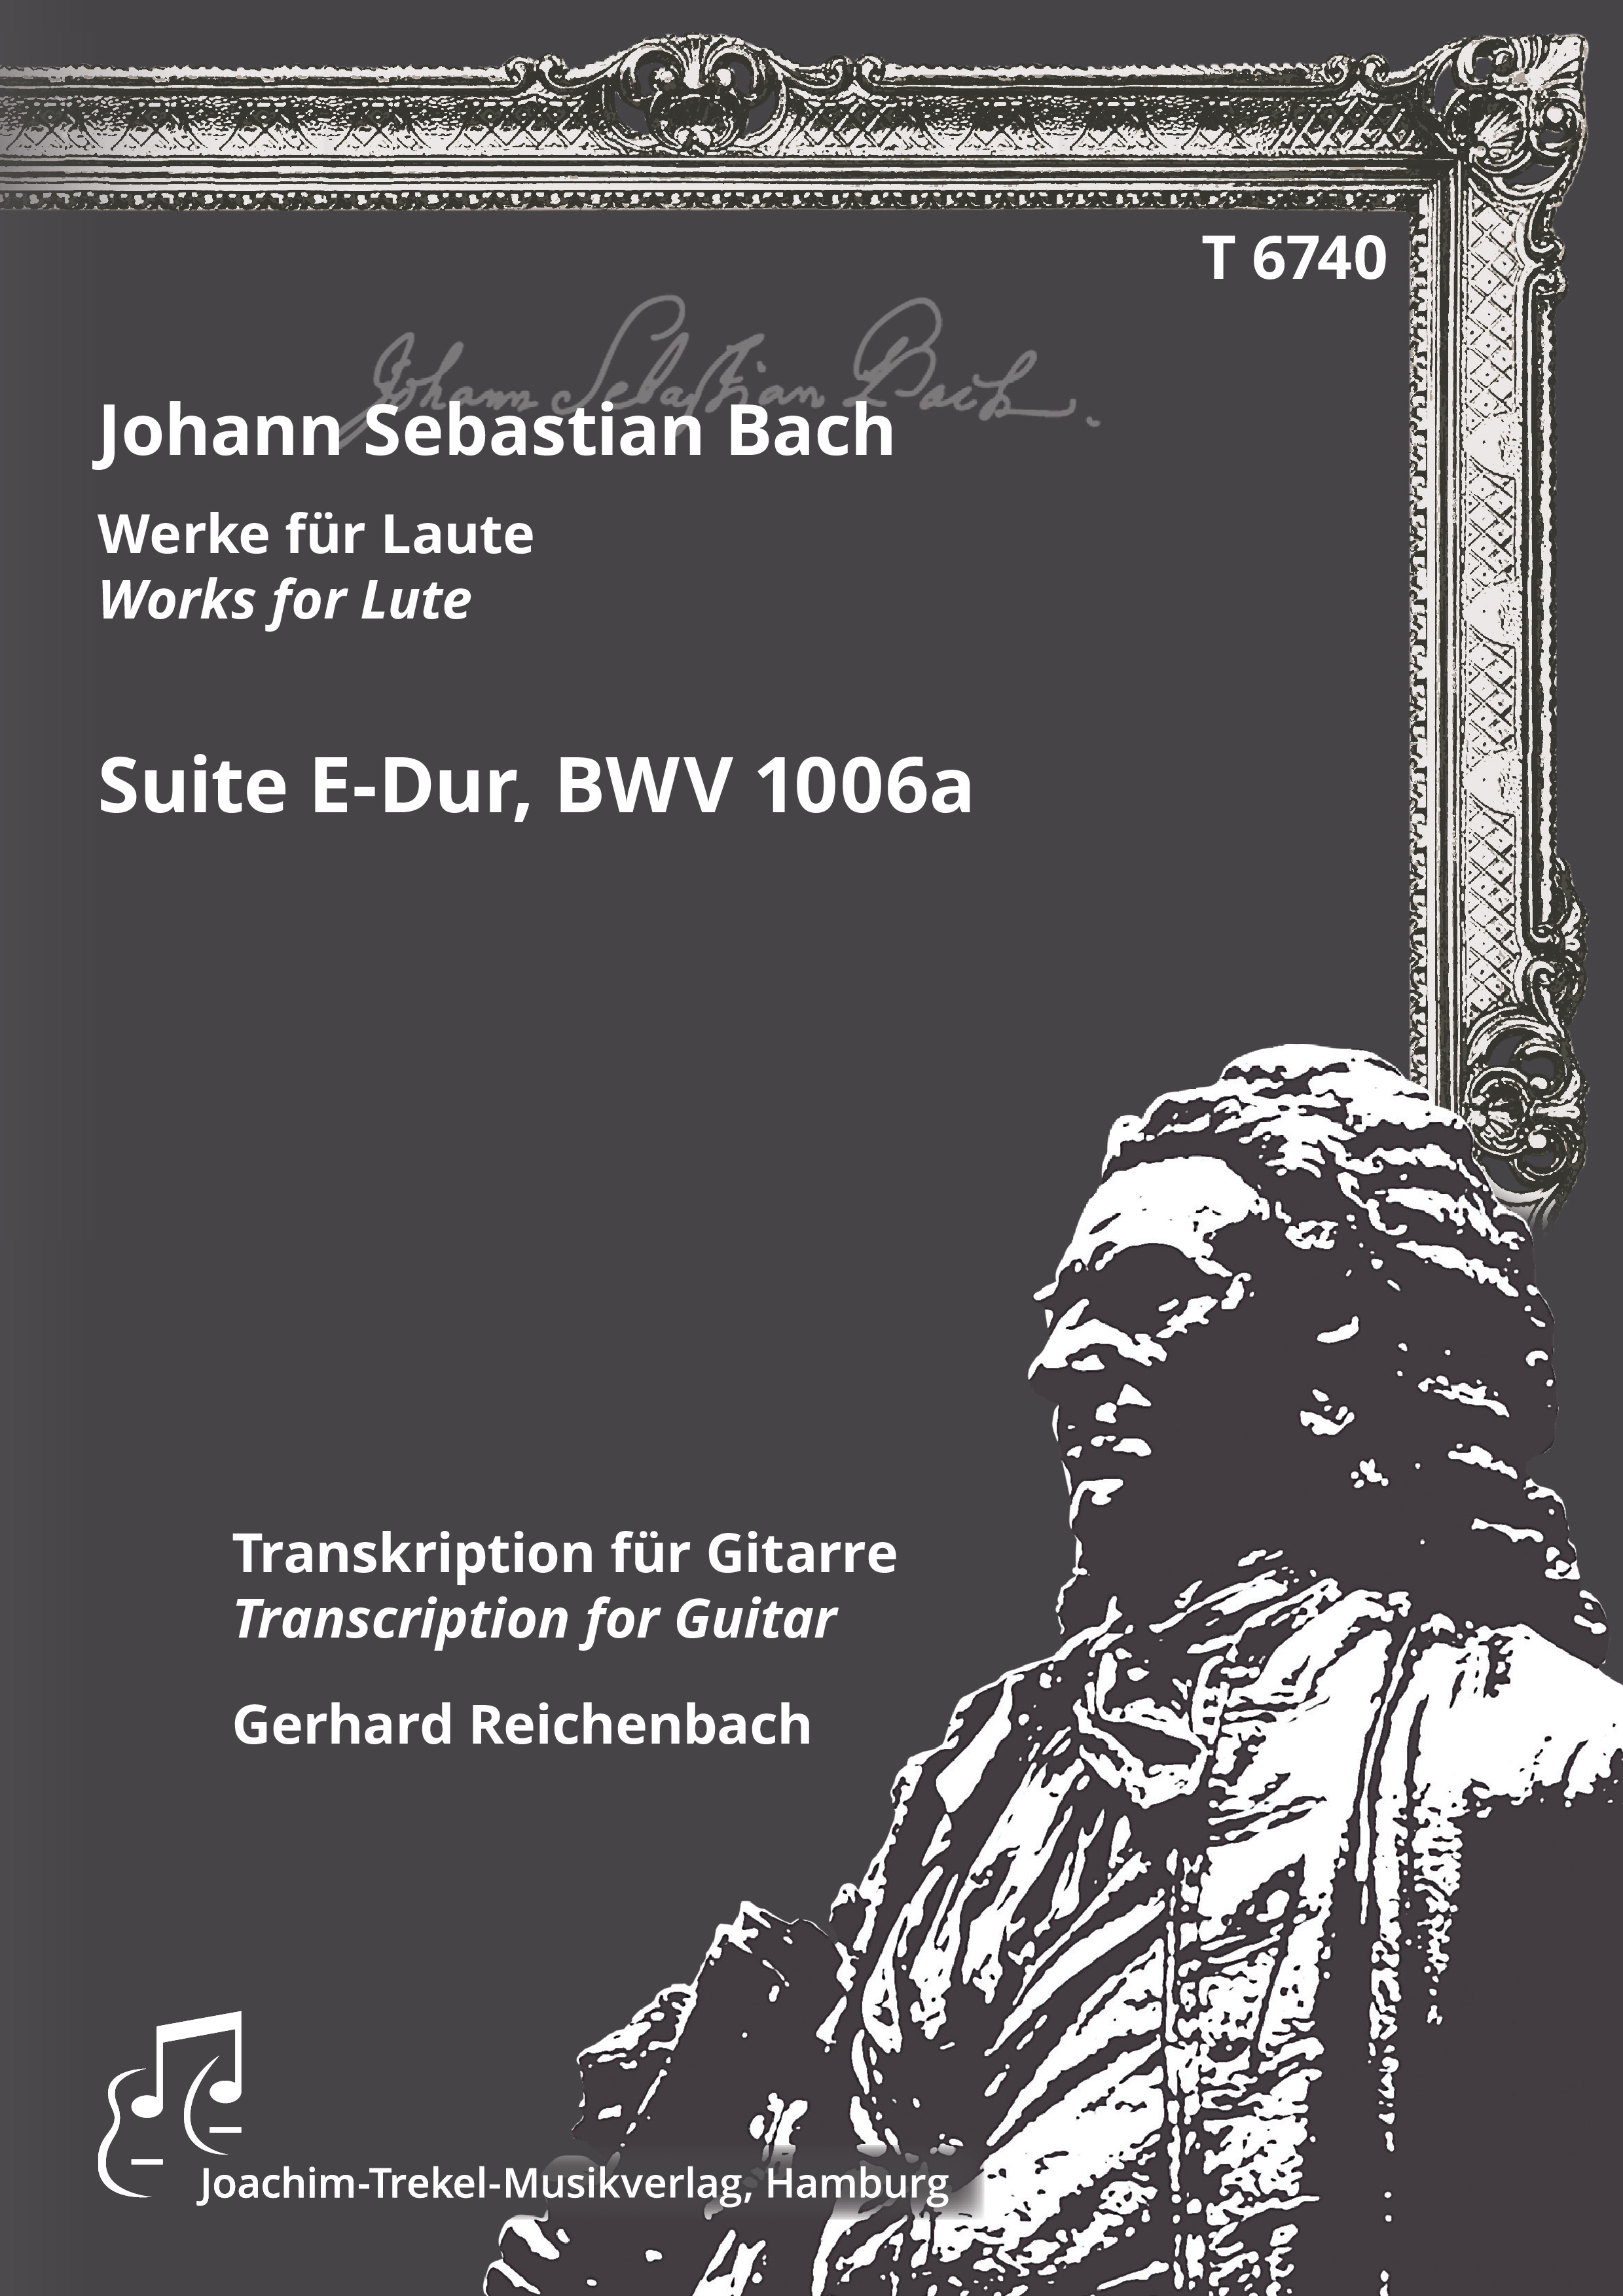 Suite E-Dur, BWV 1006a